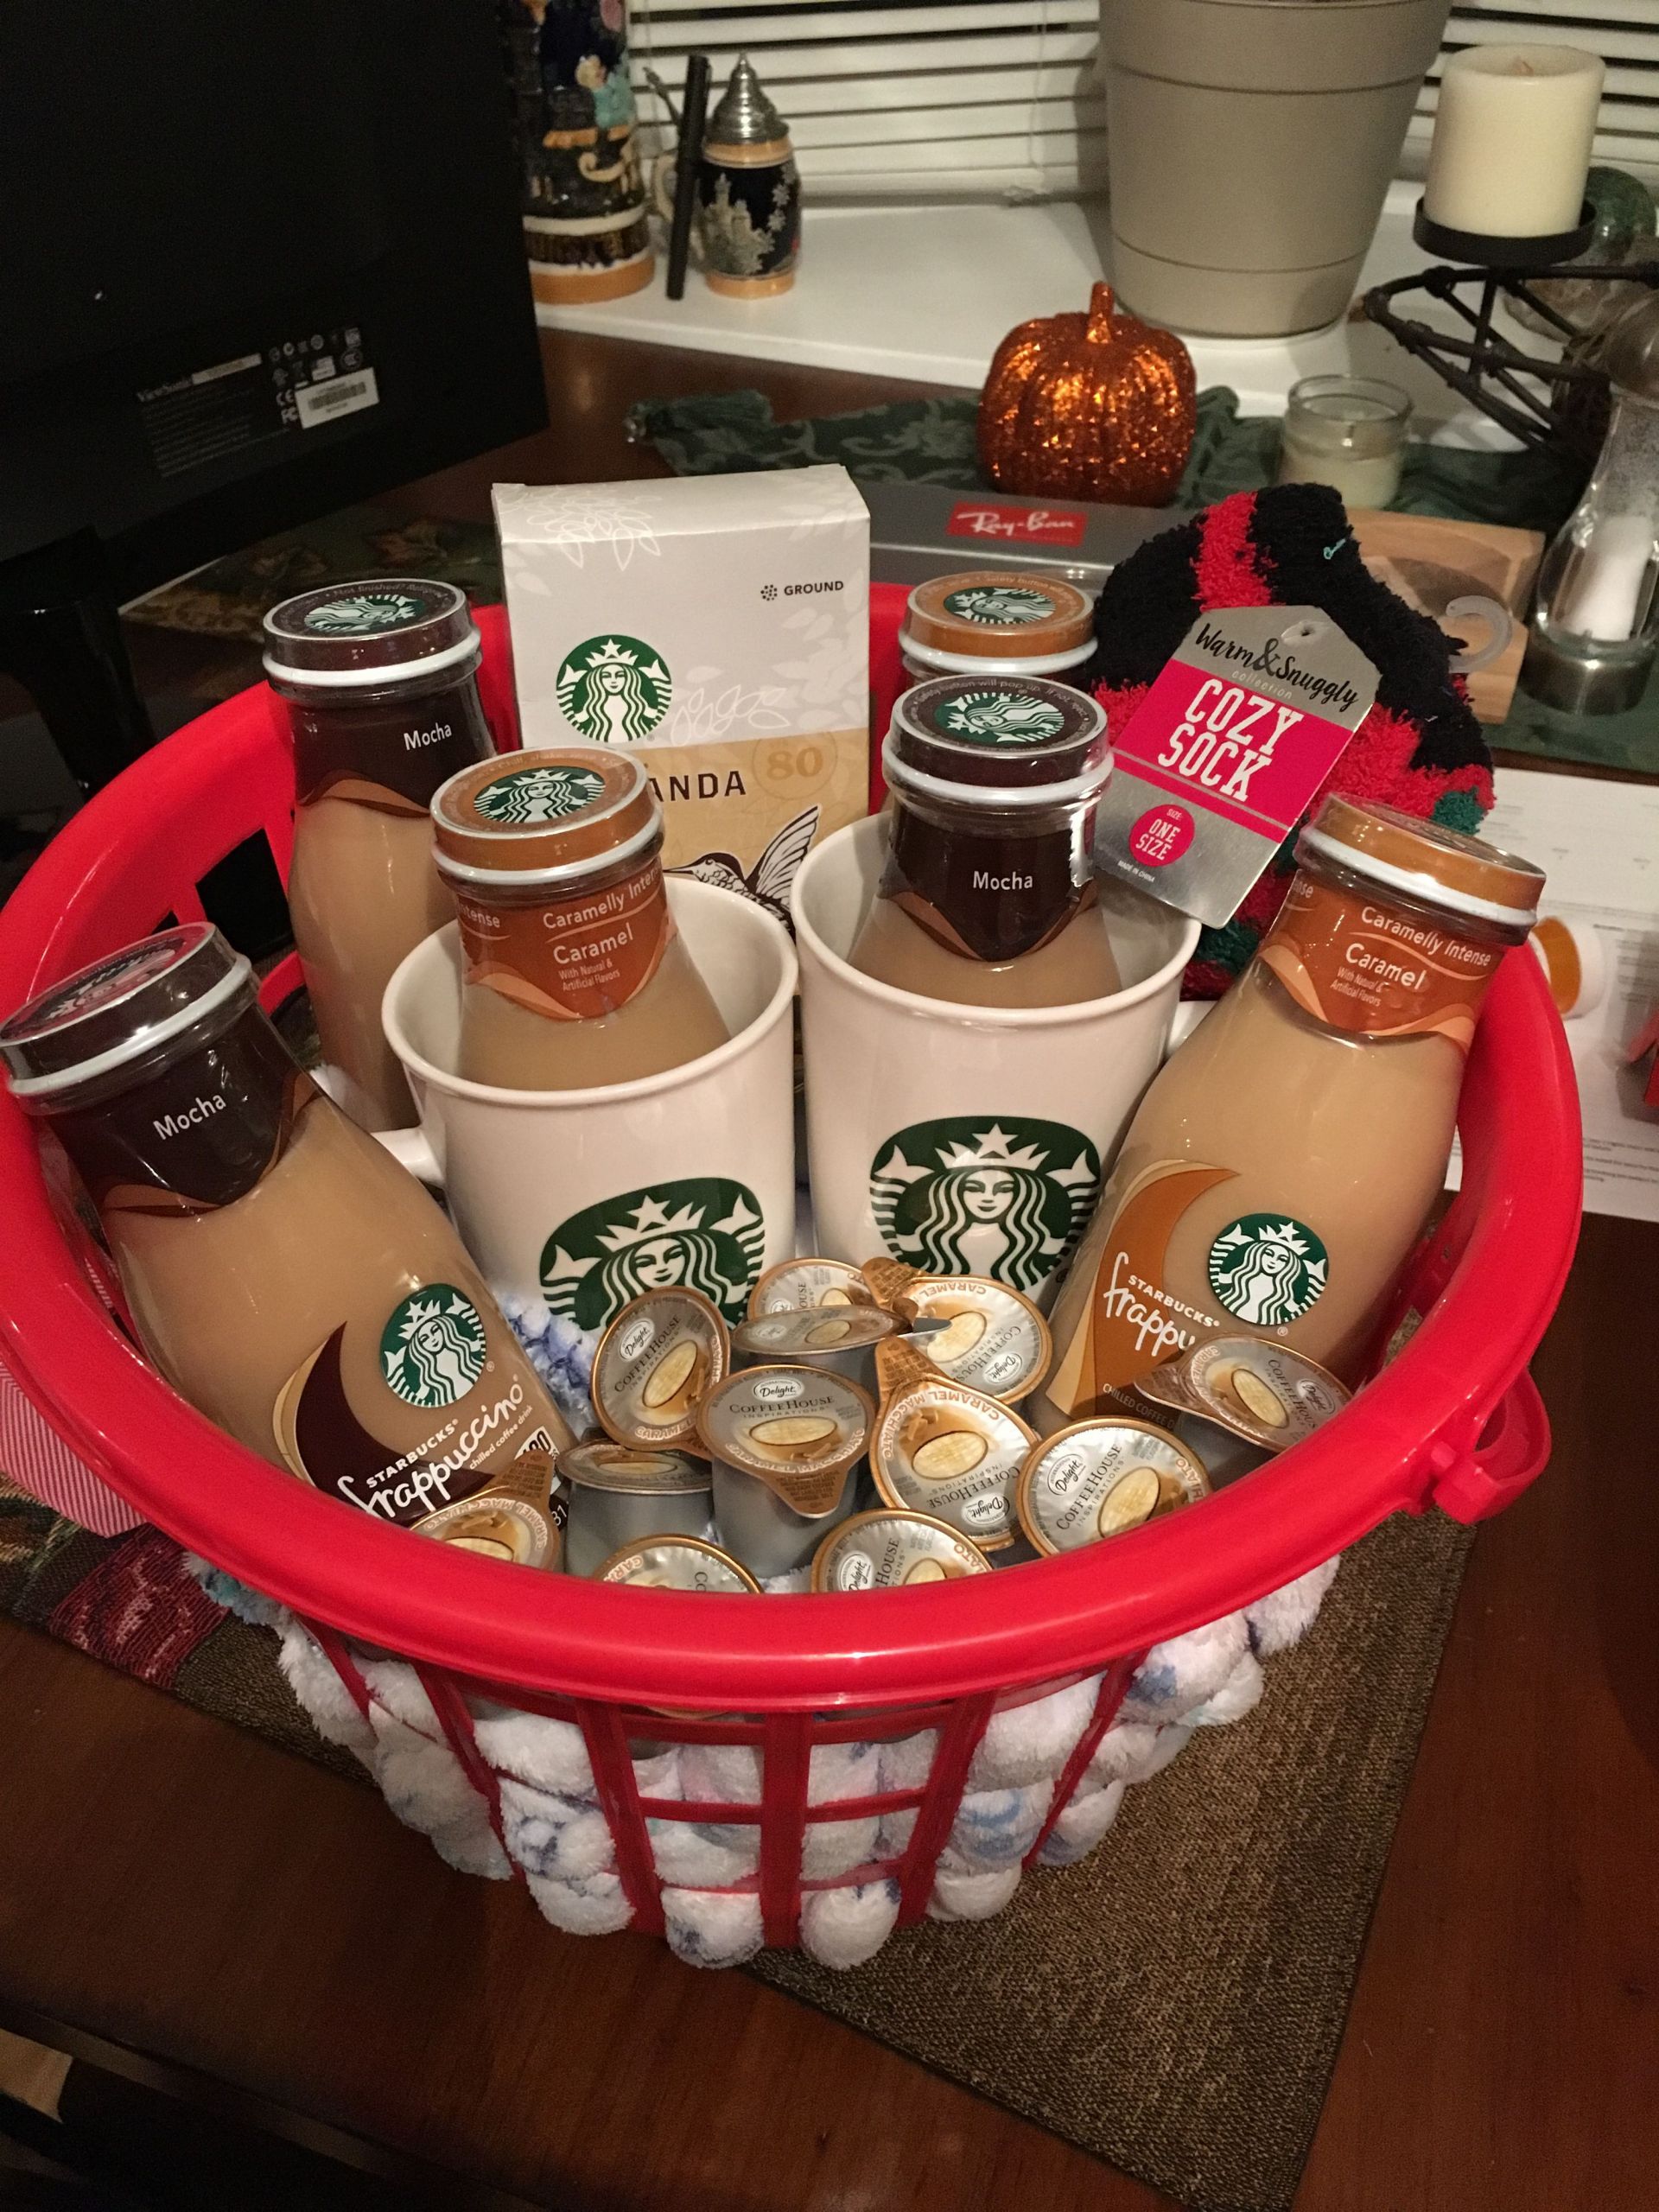 Starbucks Gift Basket Ideas
 Starbucks t basket